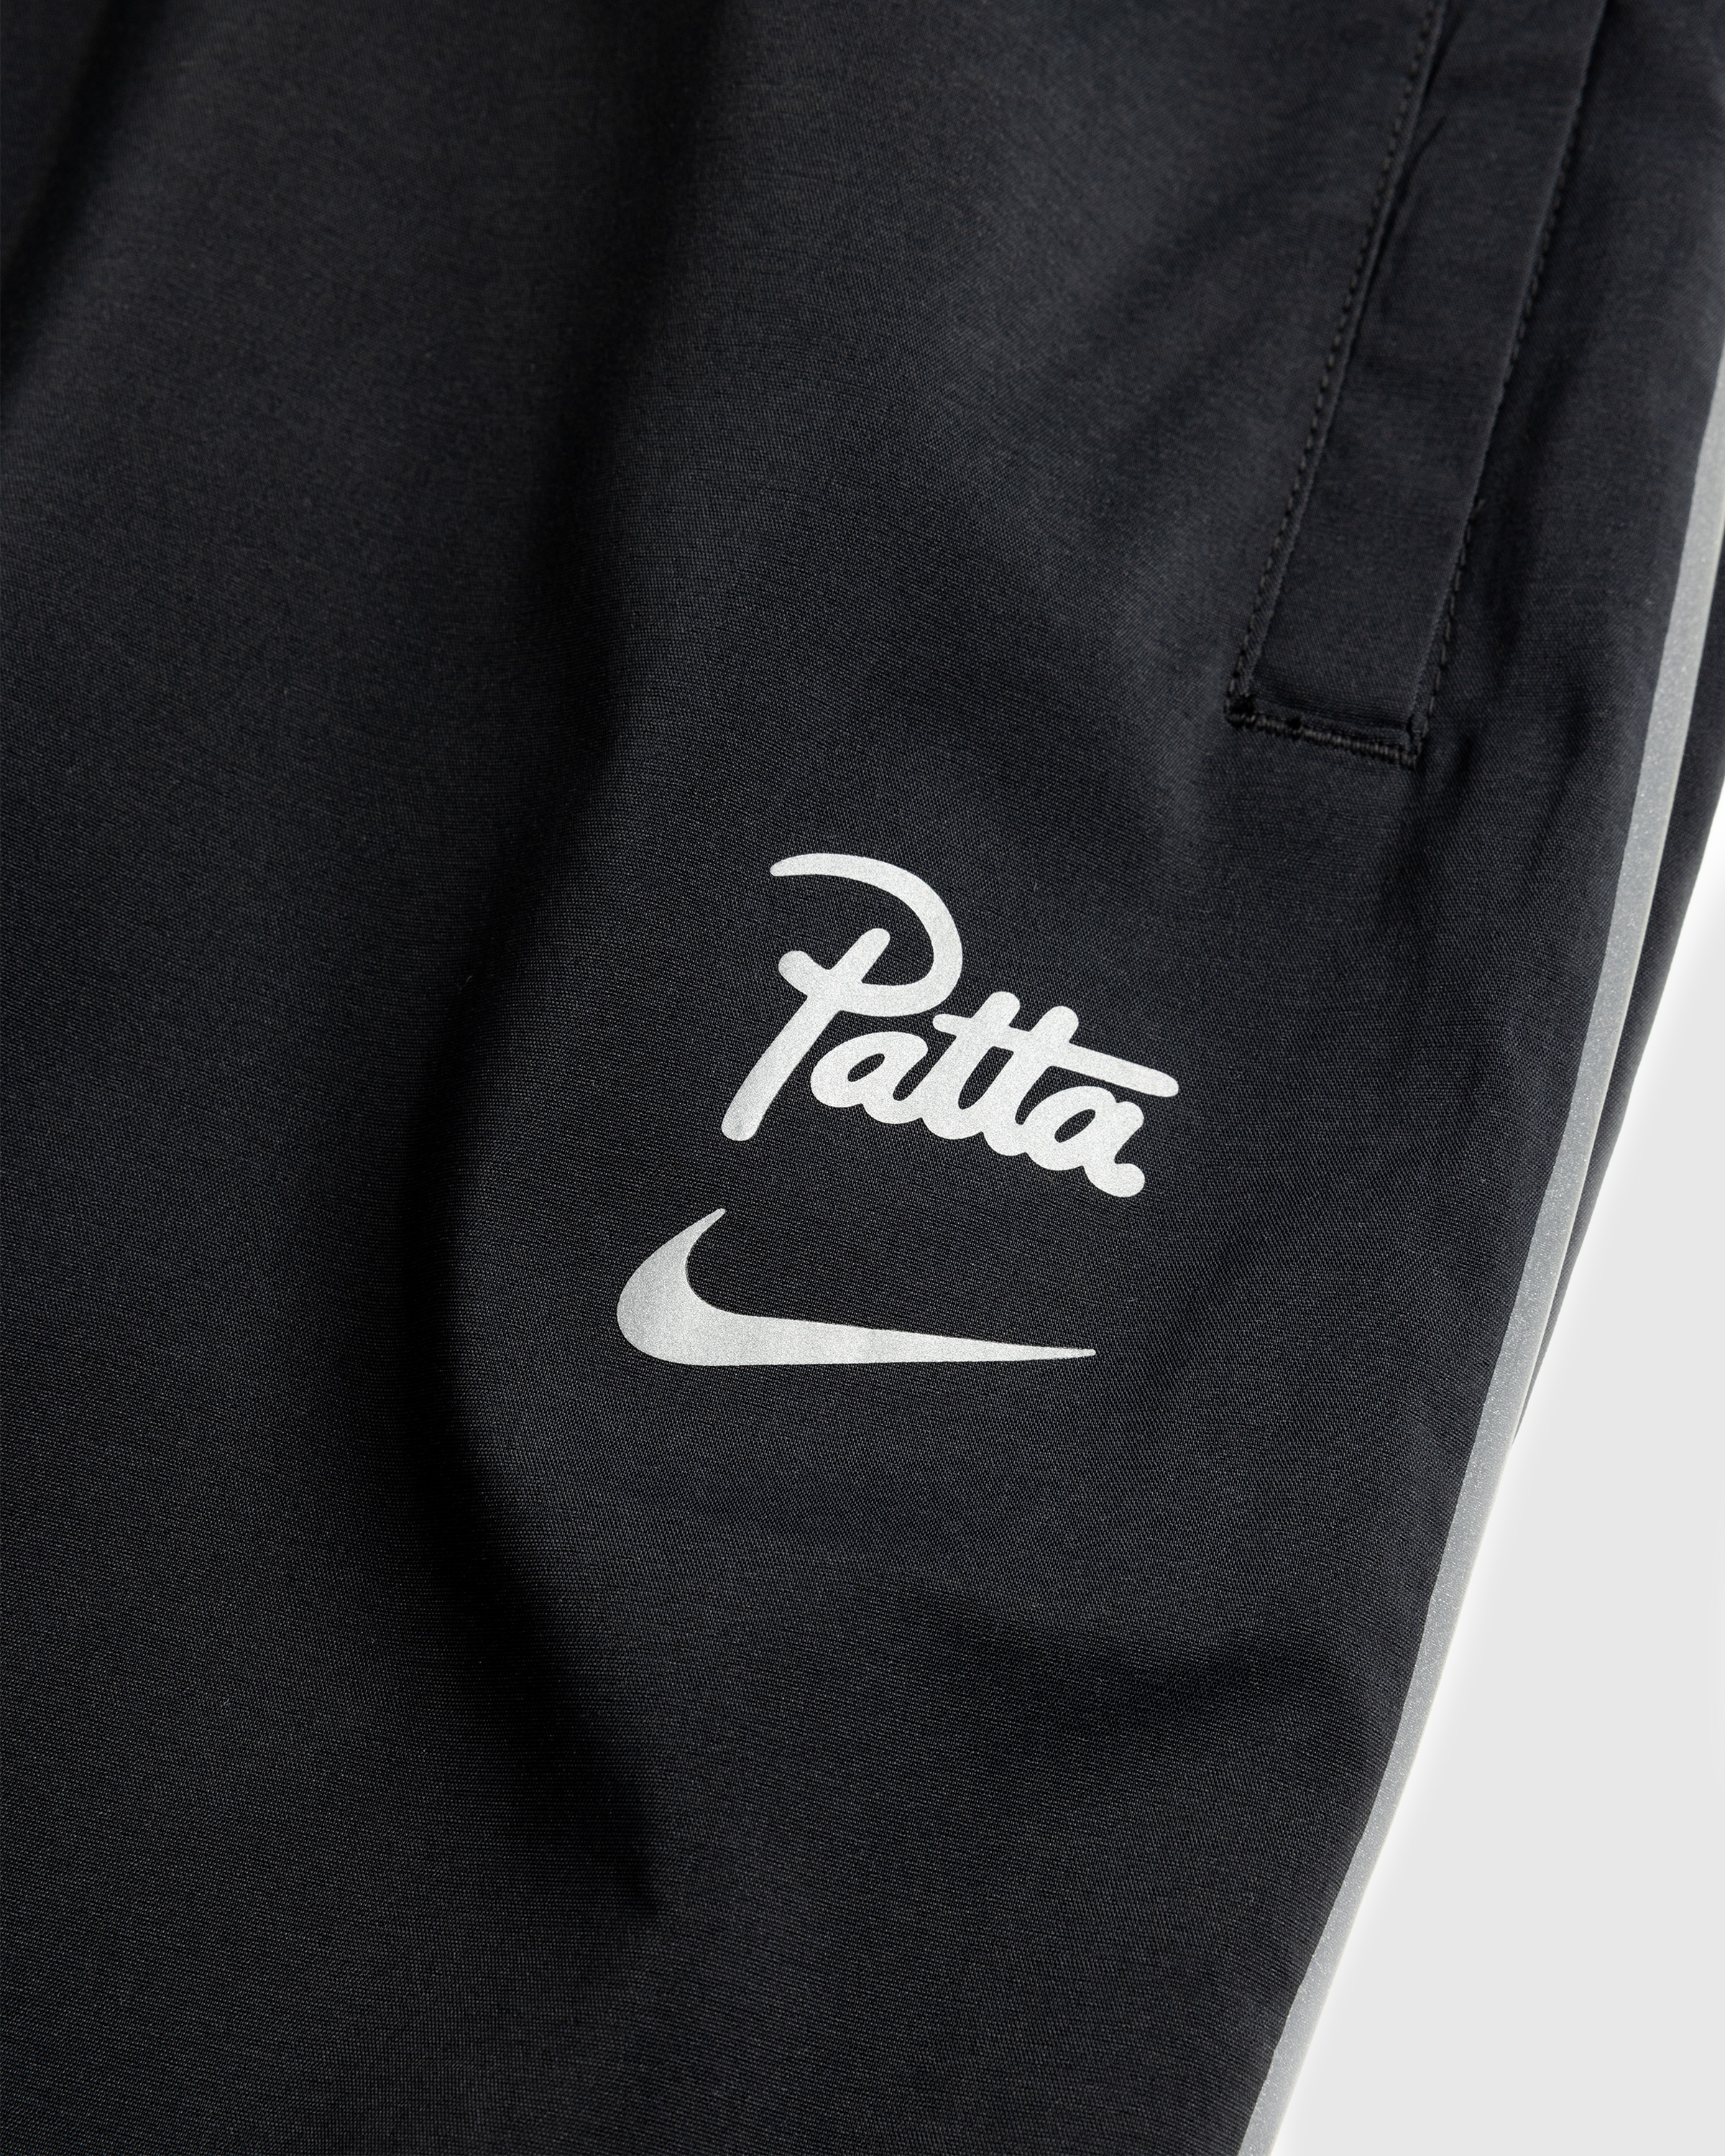 Nike x Patta – Men's Track Pants Black - Track Pants - Black - Image 7